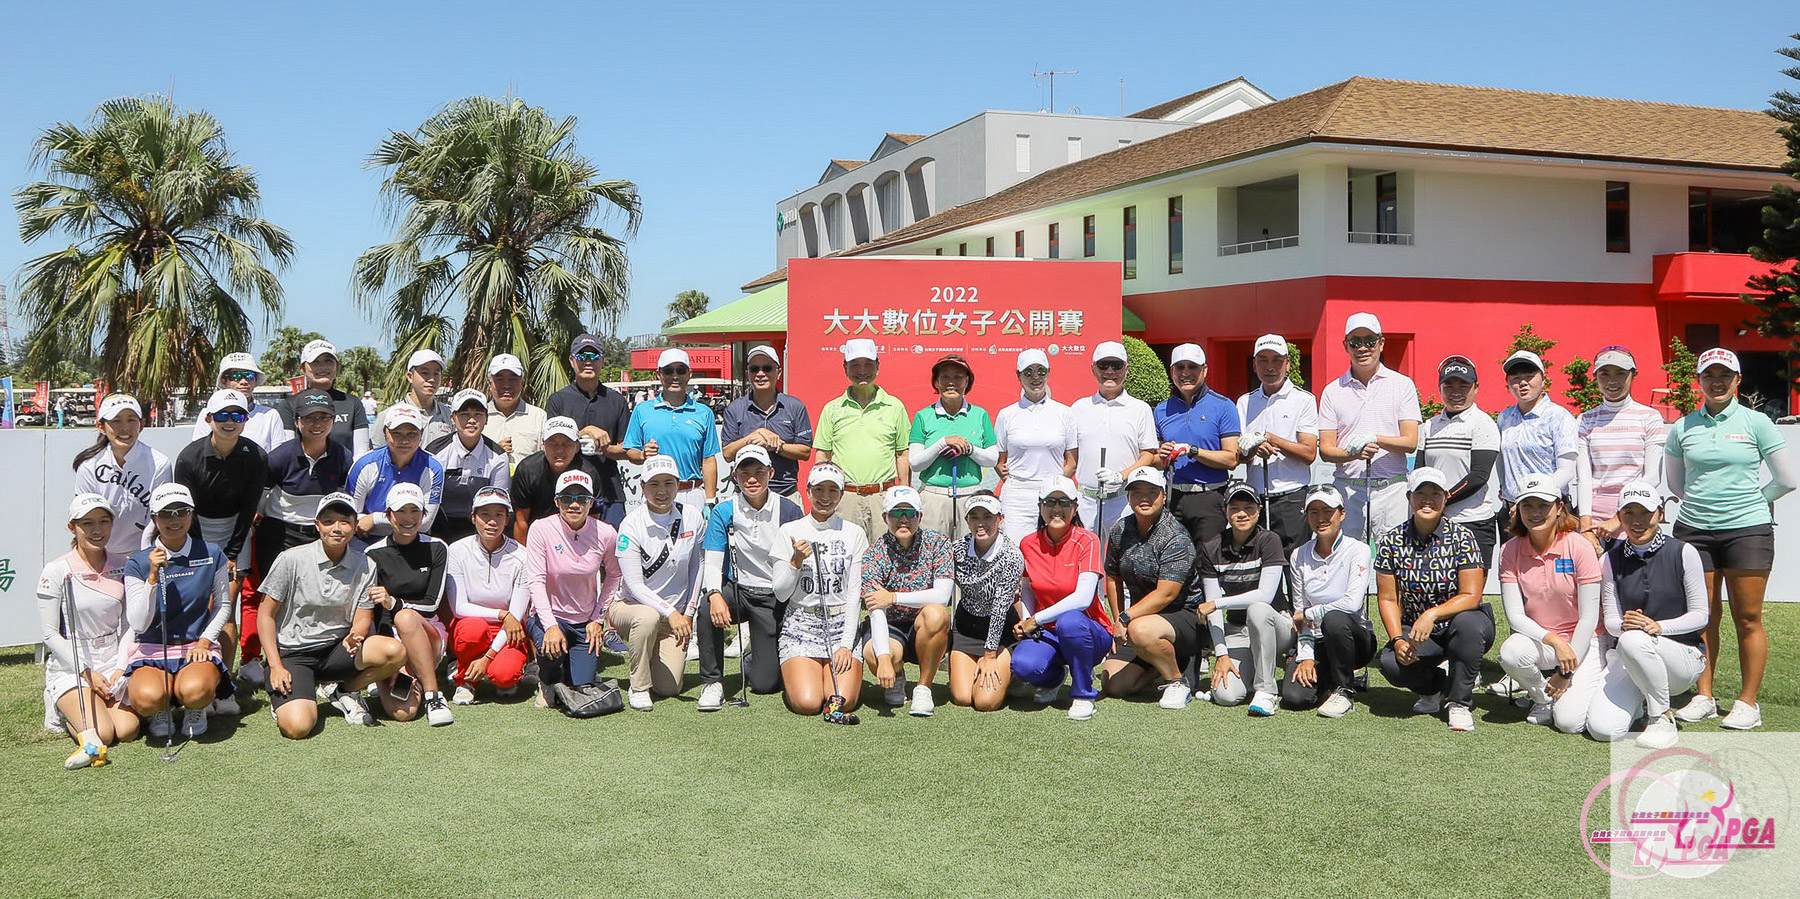 大大數位董事長戴永輝(右四)和台灣女子職業高爾夫協會劉依貞理事長(右六)以及貴賓參賽選手們在職業業餘配對賽合影。葉勇宏攝影